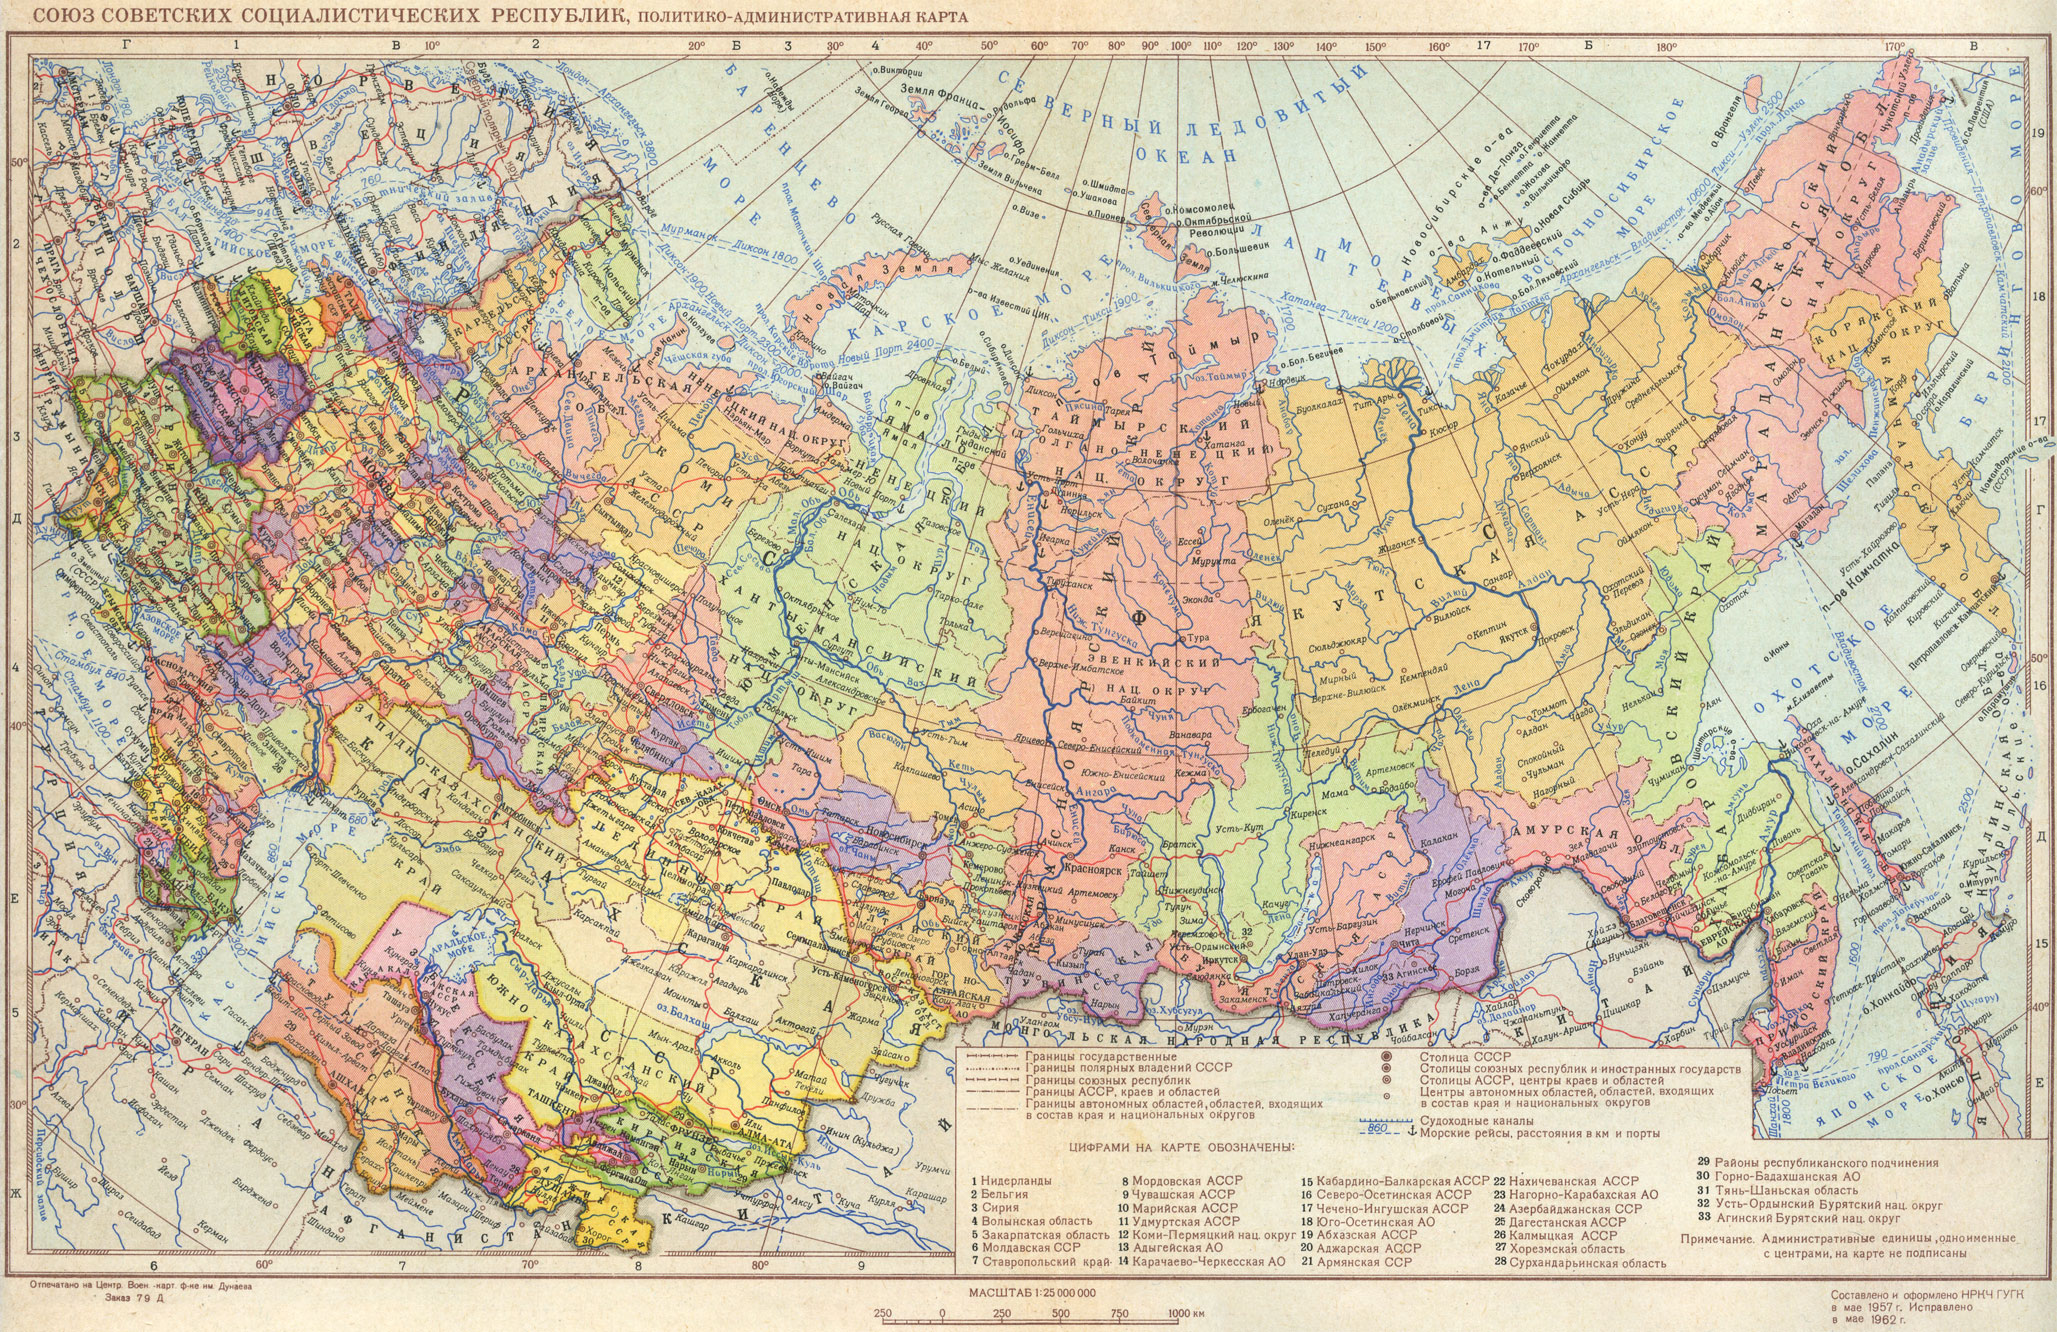 Союз Советских Социалистичеких Республик, политико-административная карта.